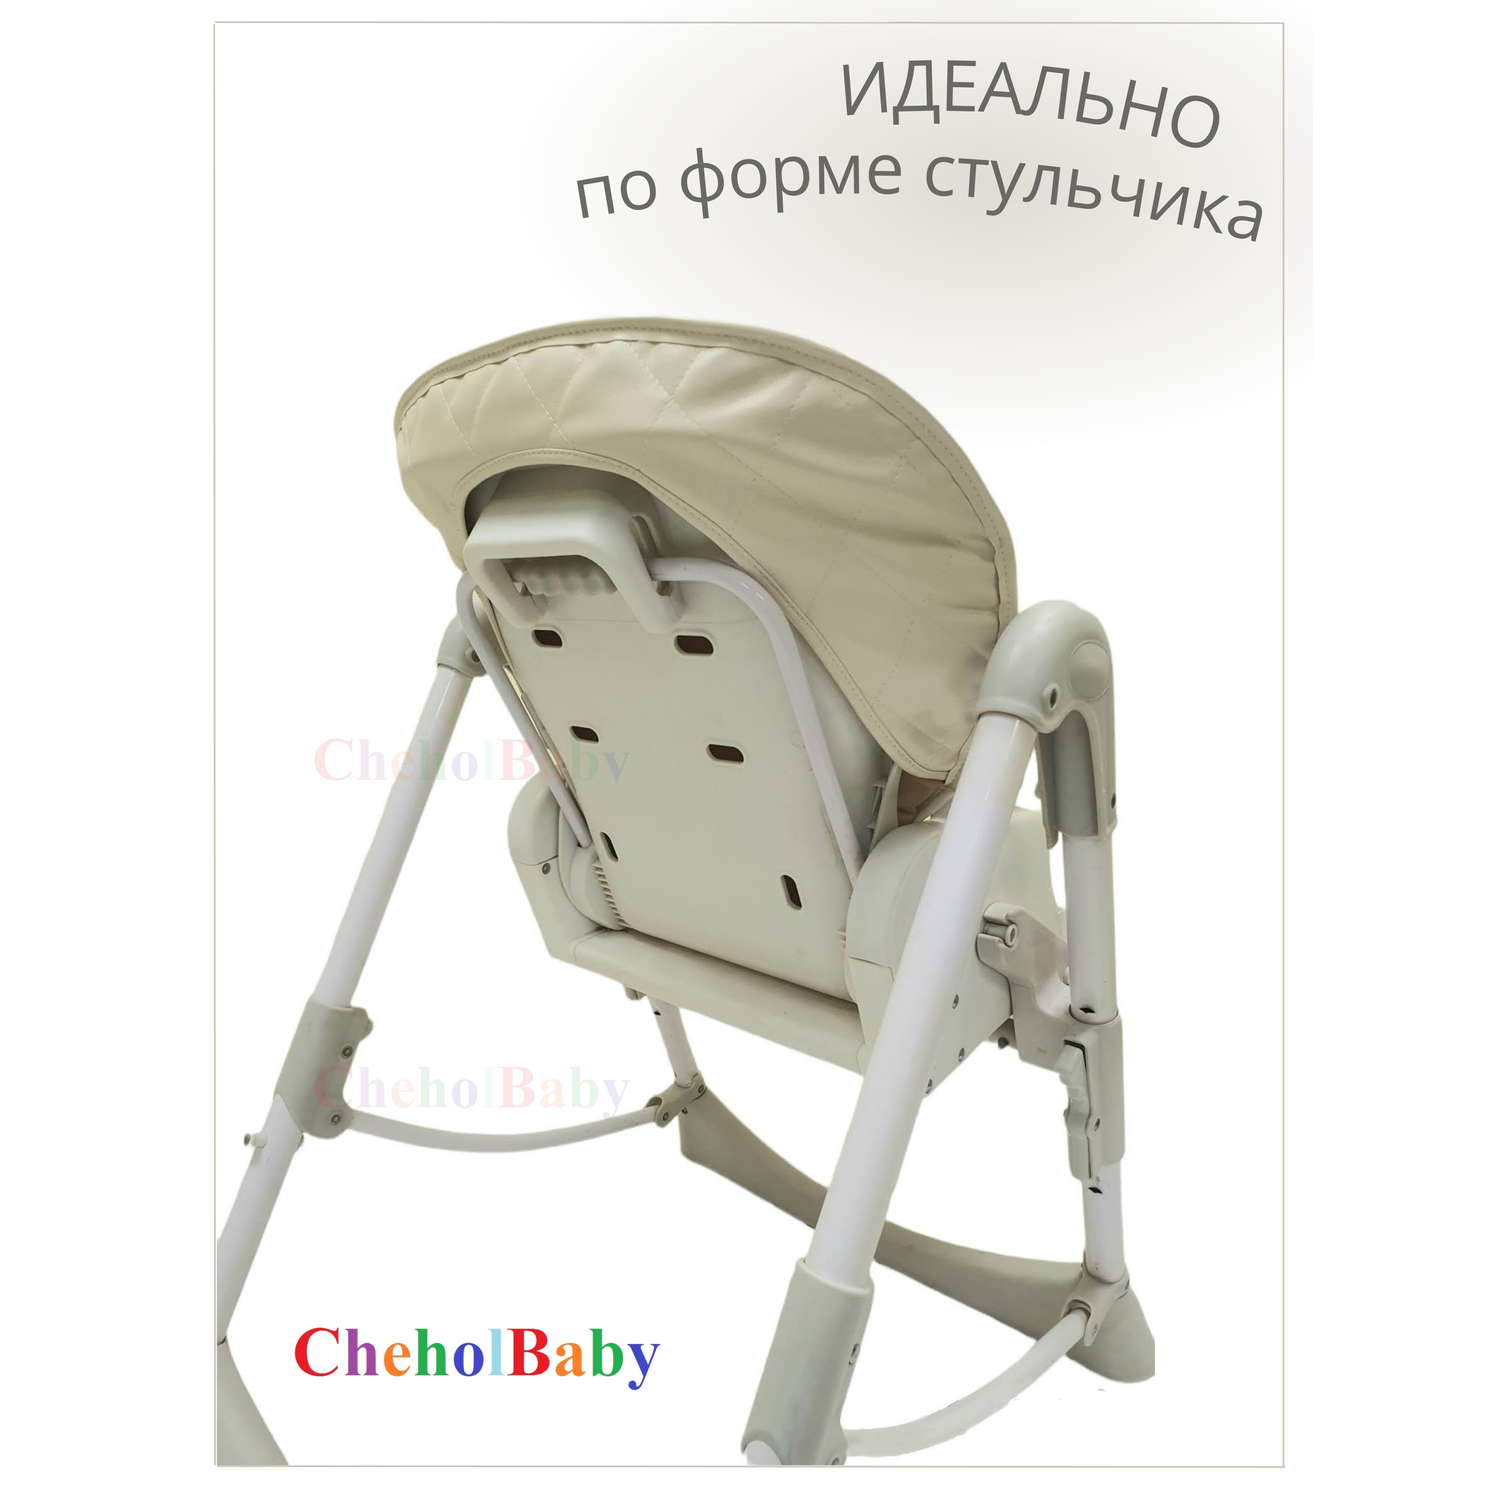 Чехол CheholBaby на детский стульчик для кормления молочный - фото 3